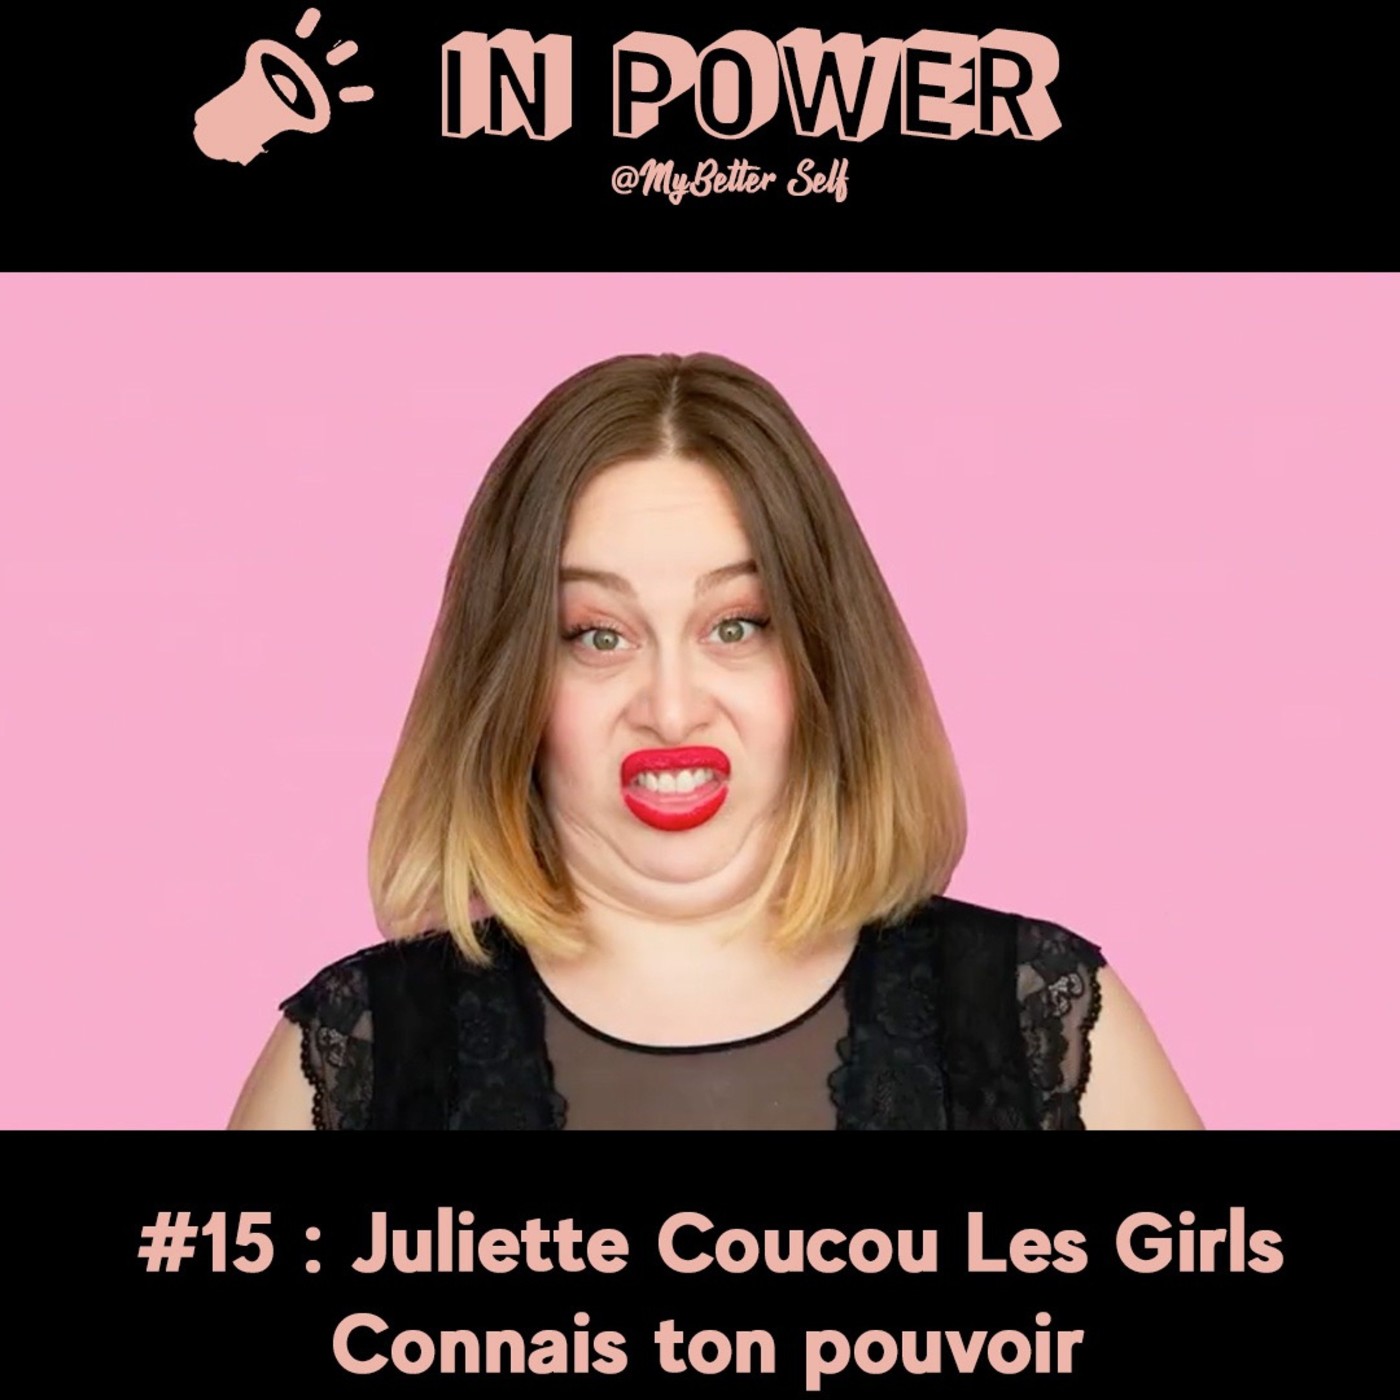 Juliette Coucou Les Girls - Connais ton pouvoir